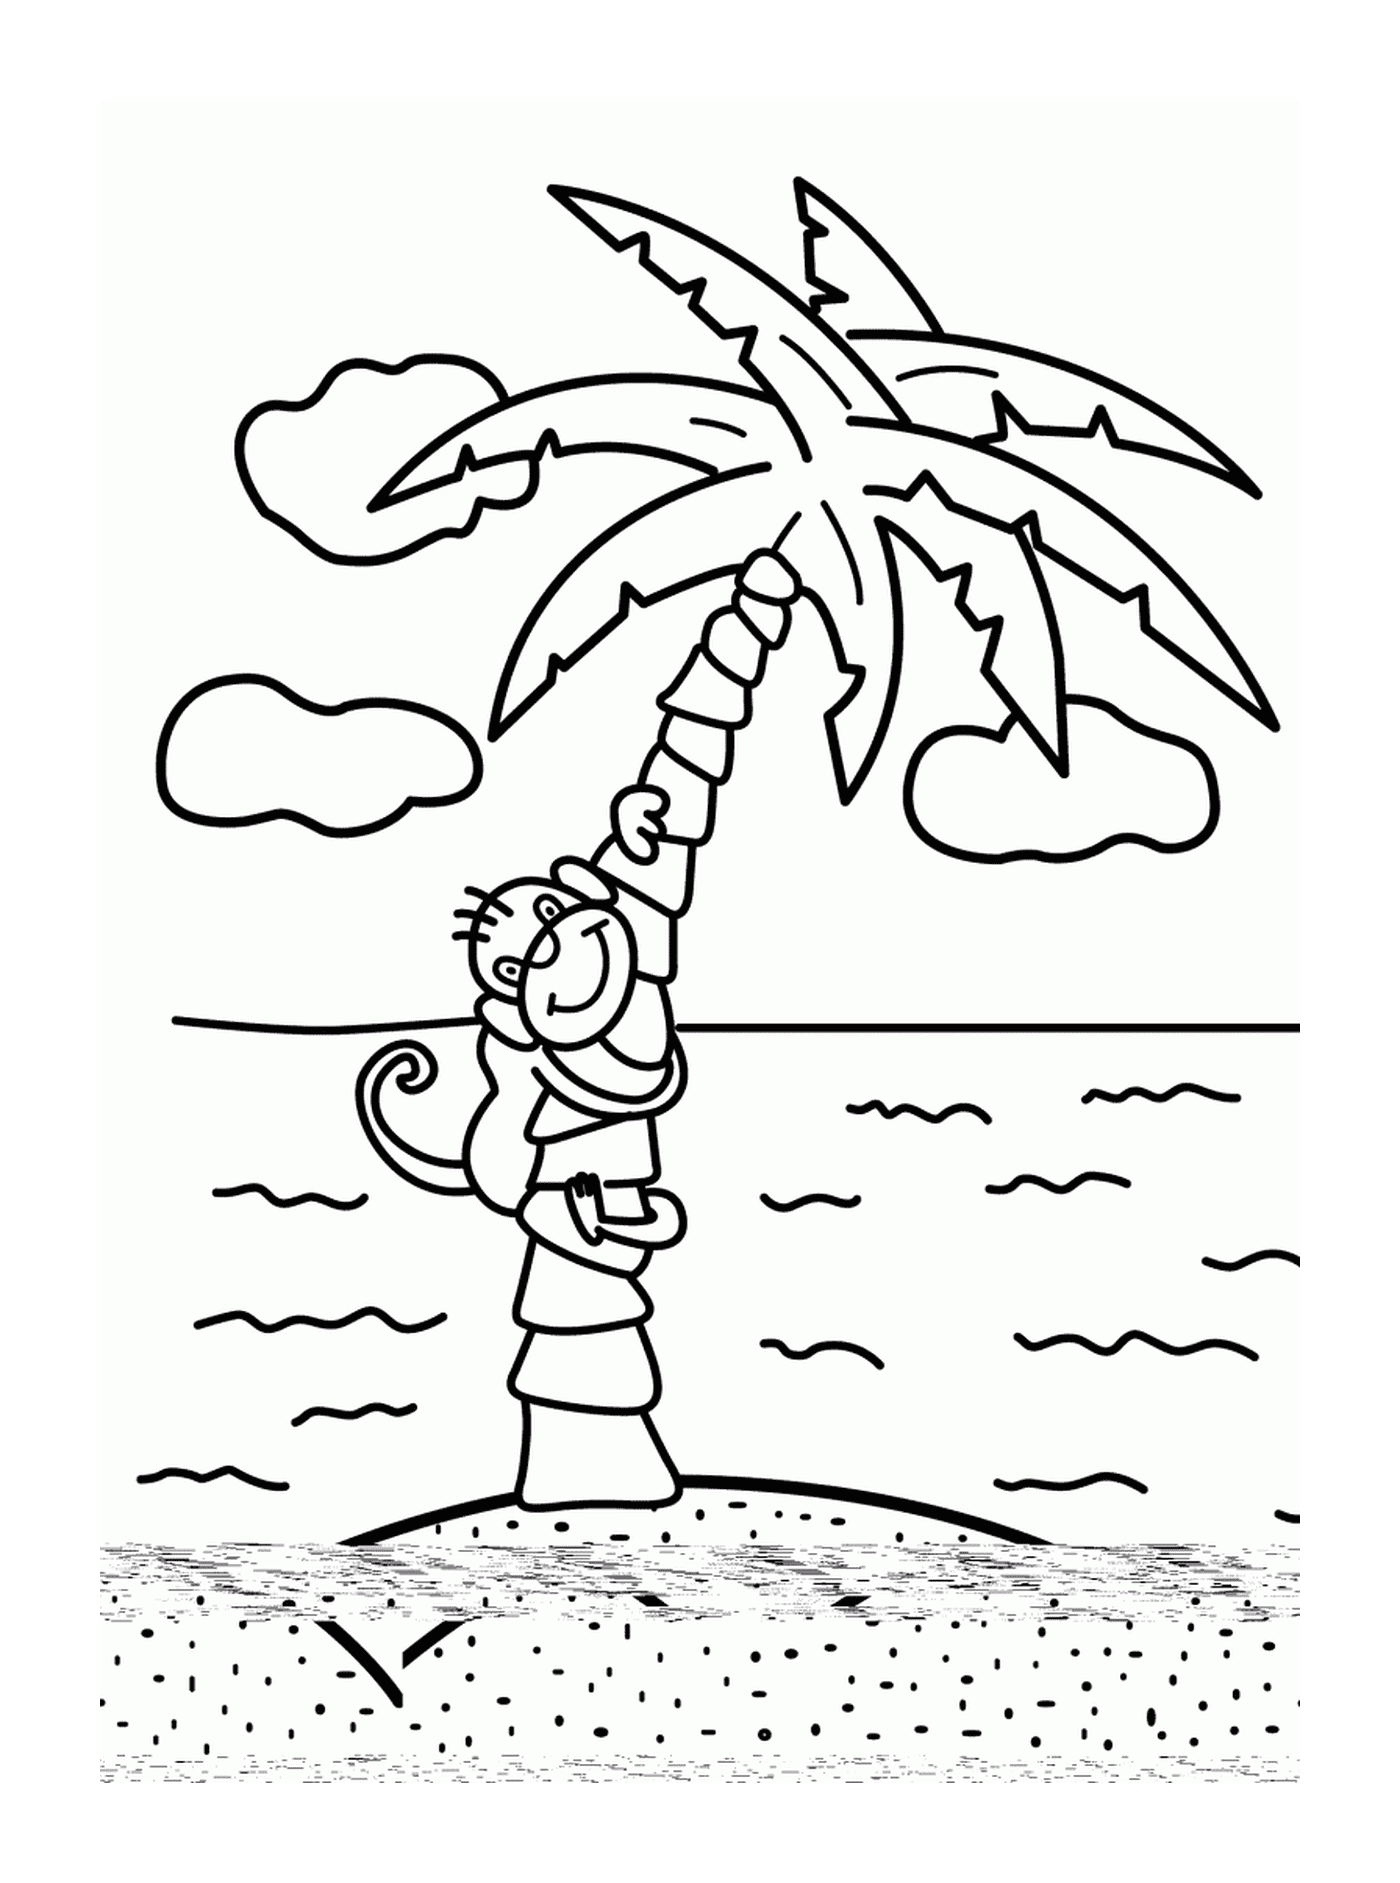  Пальмовое дерево с обезьяной и пляжем 